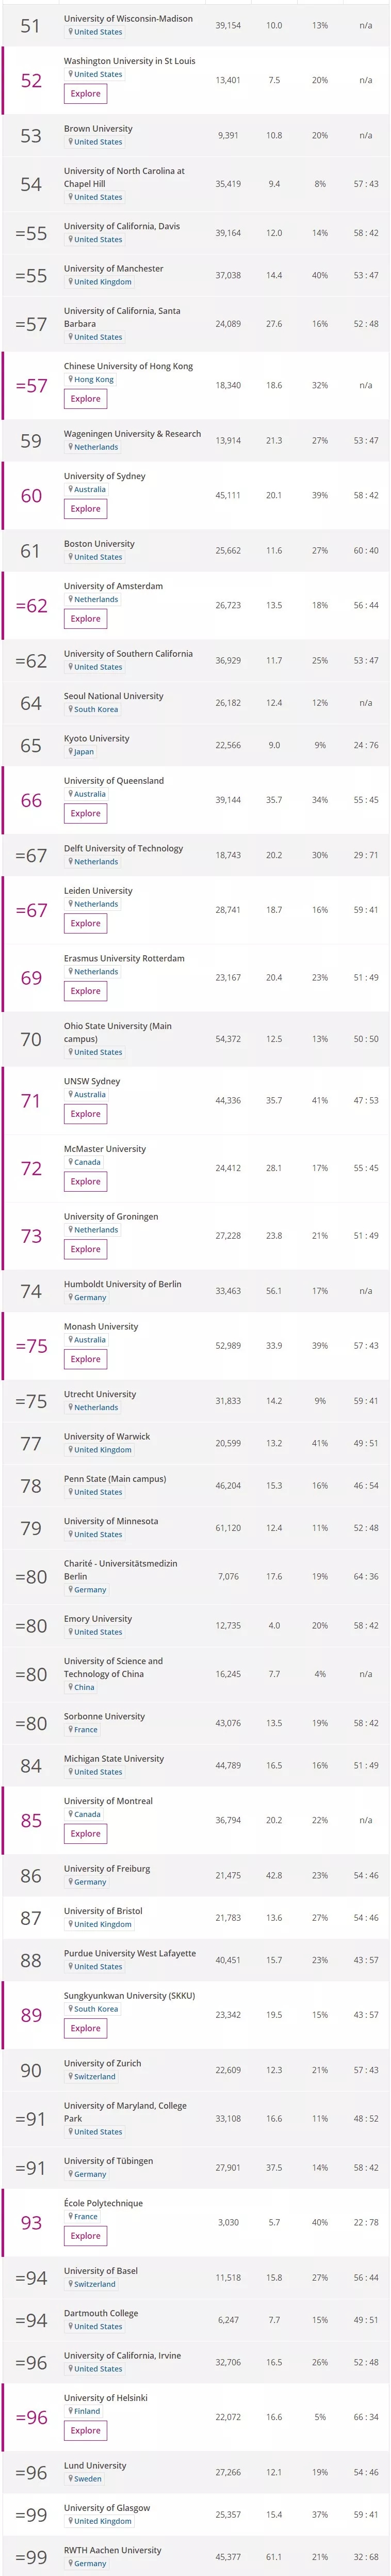 泰晤士世界大学排名.jpg